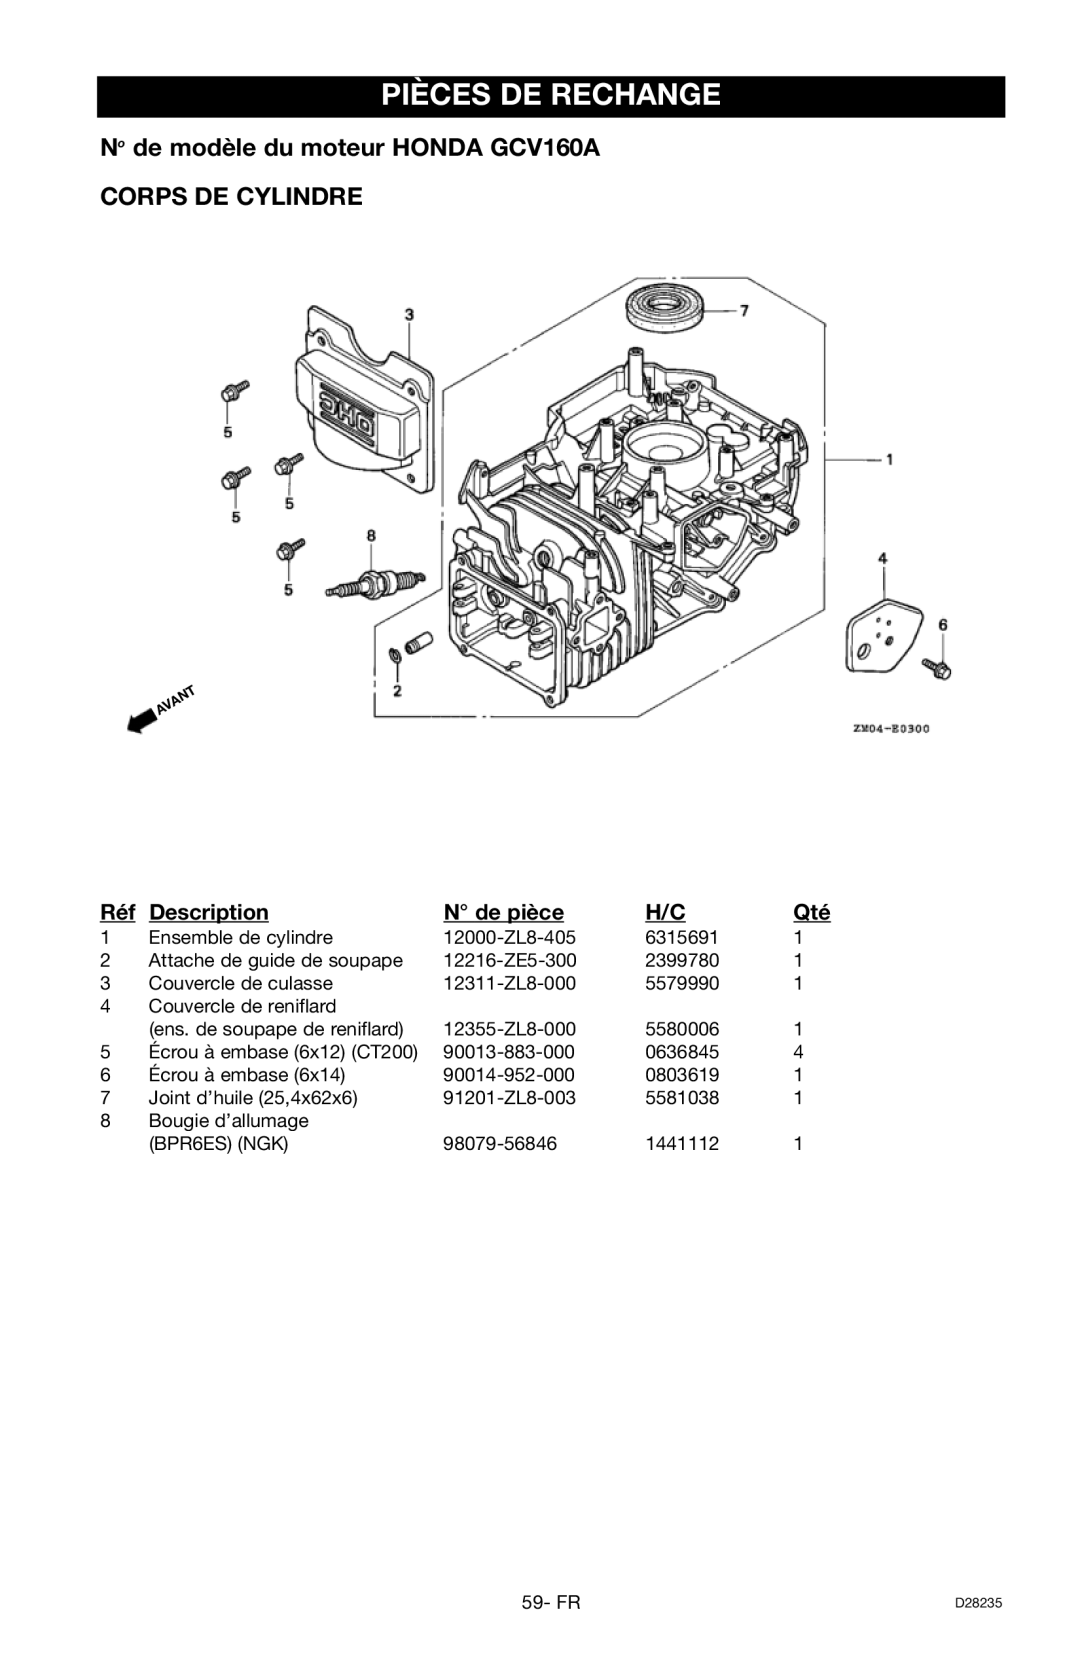 Craftsman 919.672241 Pièces De Rechange, No de modèle du moteur HONDA GCV160A, Corps De Cylindre, Description, N de pièce 